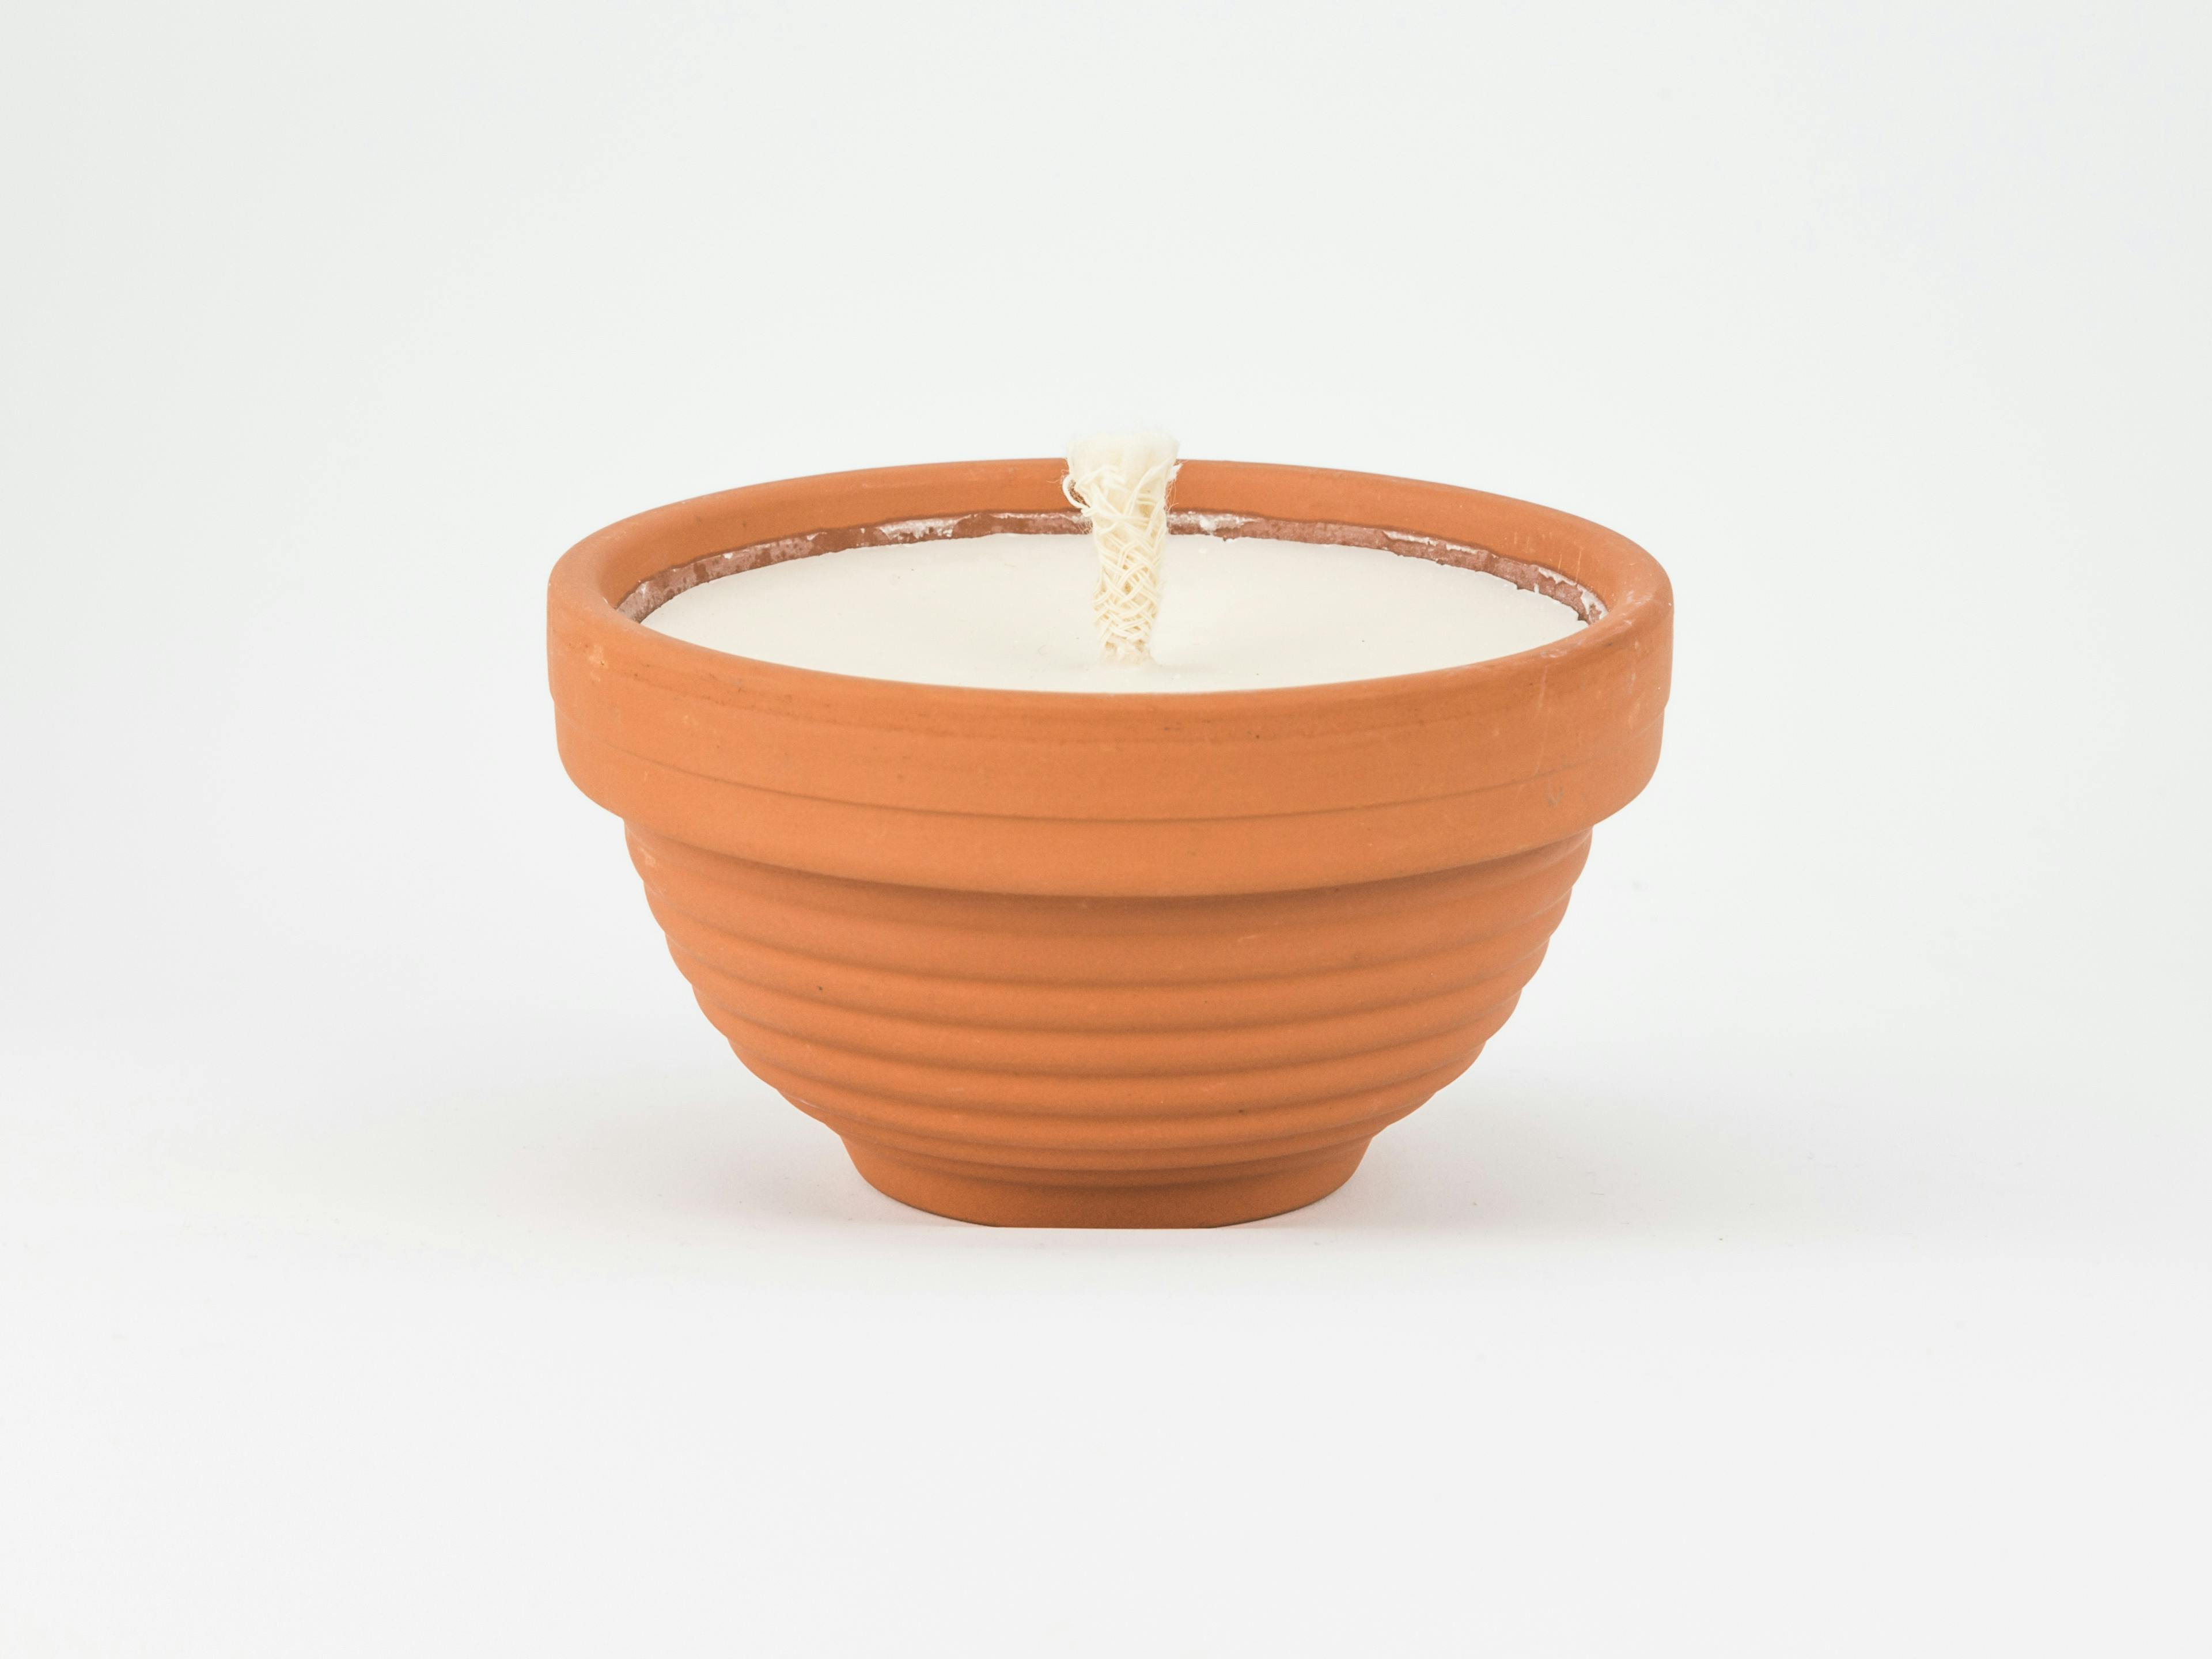 Bougies petit pot en terre cuite, parfum Thé vert & Citronnelle, produit artisanal en vente directe en Suisse